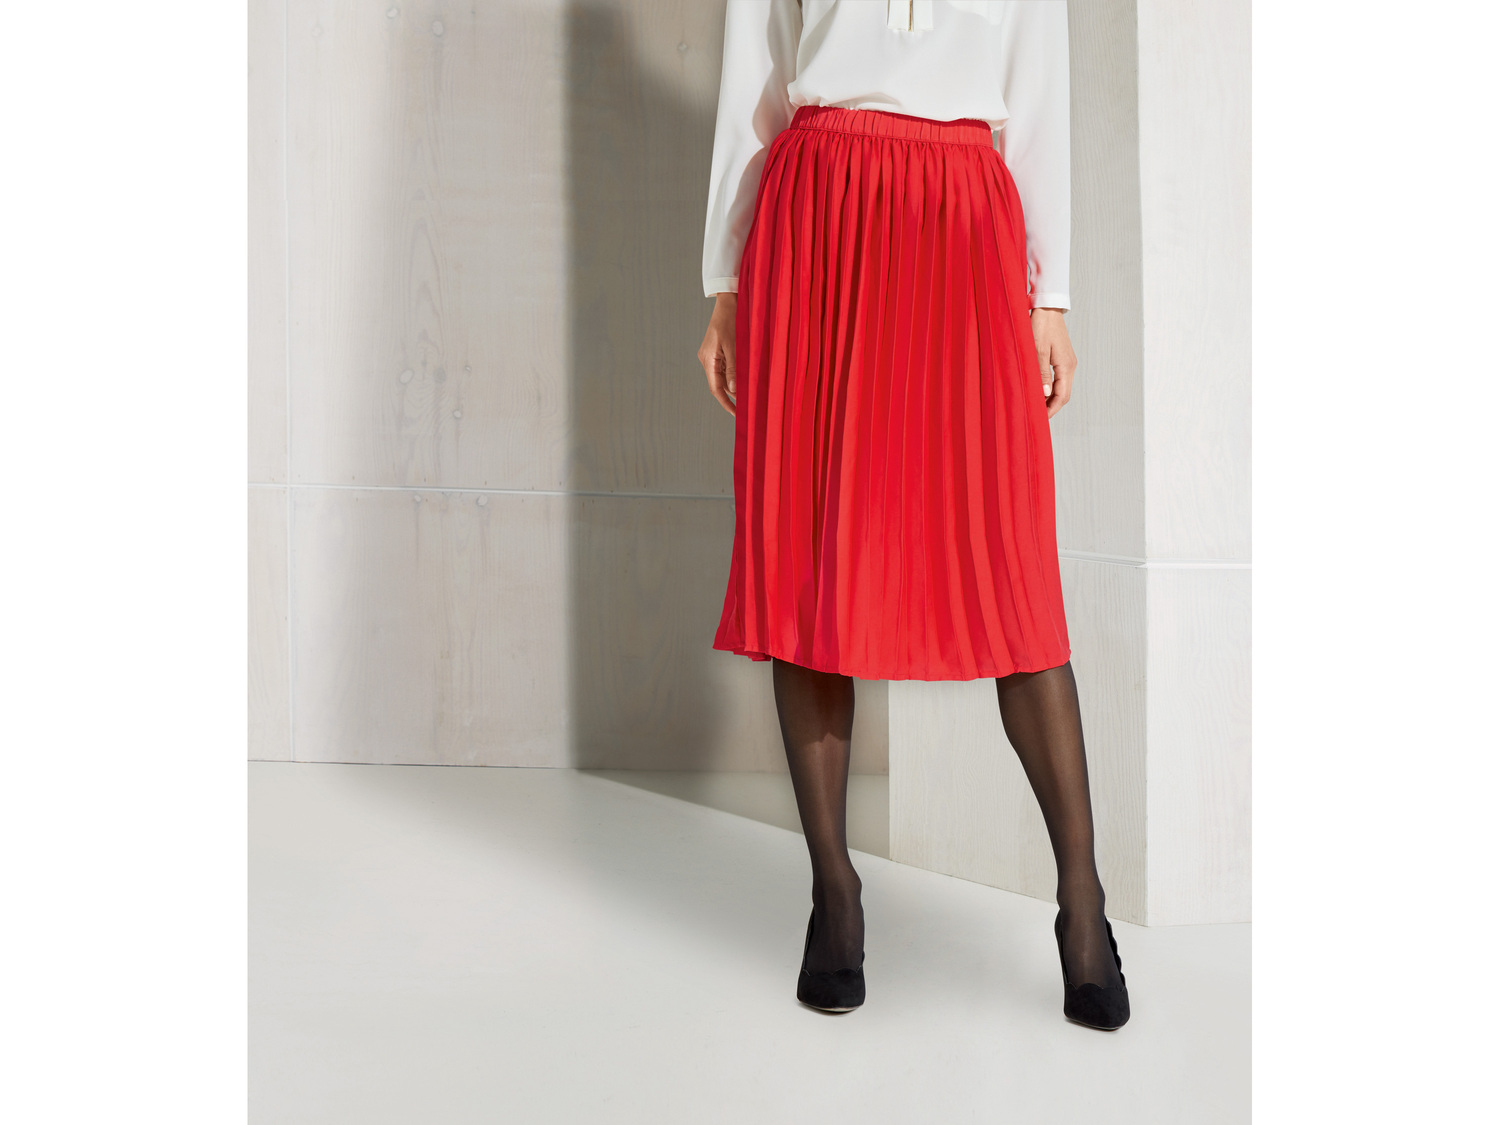 Spódnica damska Esmara, cena 39,99 PLN 
- rozmiary: 34-44
- modne wzory
Dostępne ...